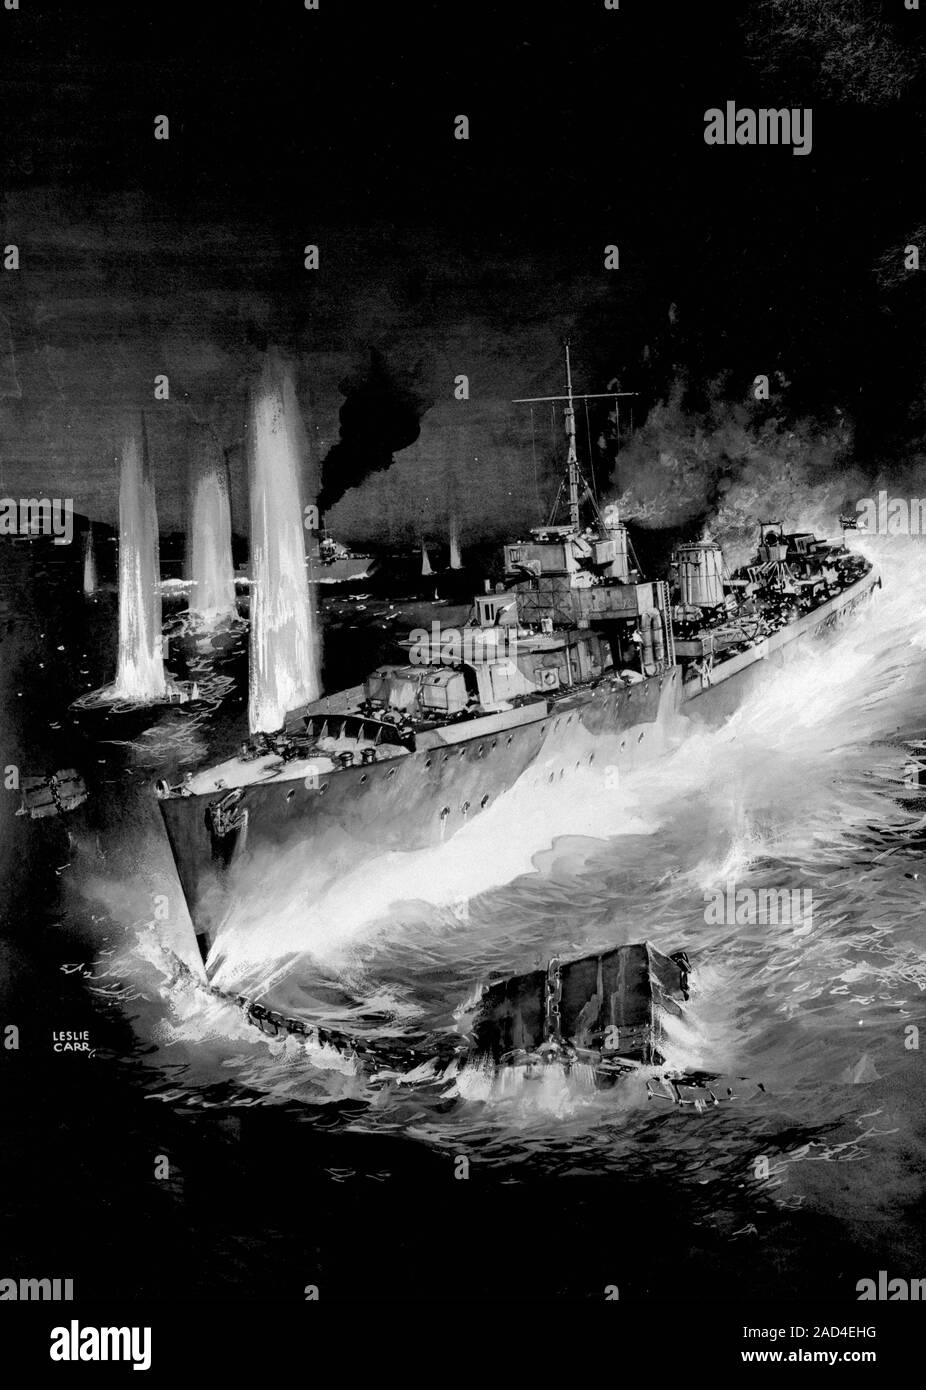 AJAXNETPHOTO. 9. NOVEMBER 1942. Algier, Algerien. - Algier BOOM Büste - der Zerstörer HMS BRACH RAMMT DEN HAFEN BOOM VERTEIDIGUNG IN EINEM GEMÄLDE DES KÜNSTLERS LESLIE CARR dargestellt. Der brach Aktion erfolgreich war, aber sie war stark beschädigt IN DER ÜBUNG UND NACH DEM ABSCHLEPPEN, VERSENKT der folgende Tag. Foto: VT-COLLECTION/AJAXNETPHOTO REF: VT 9841 Stockfoto